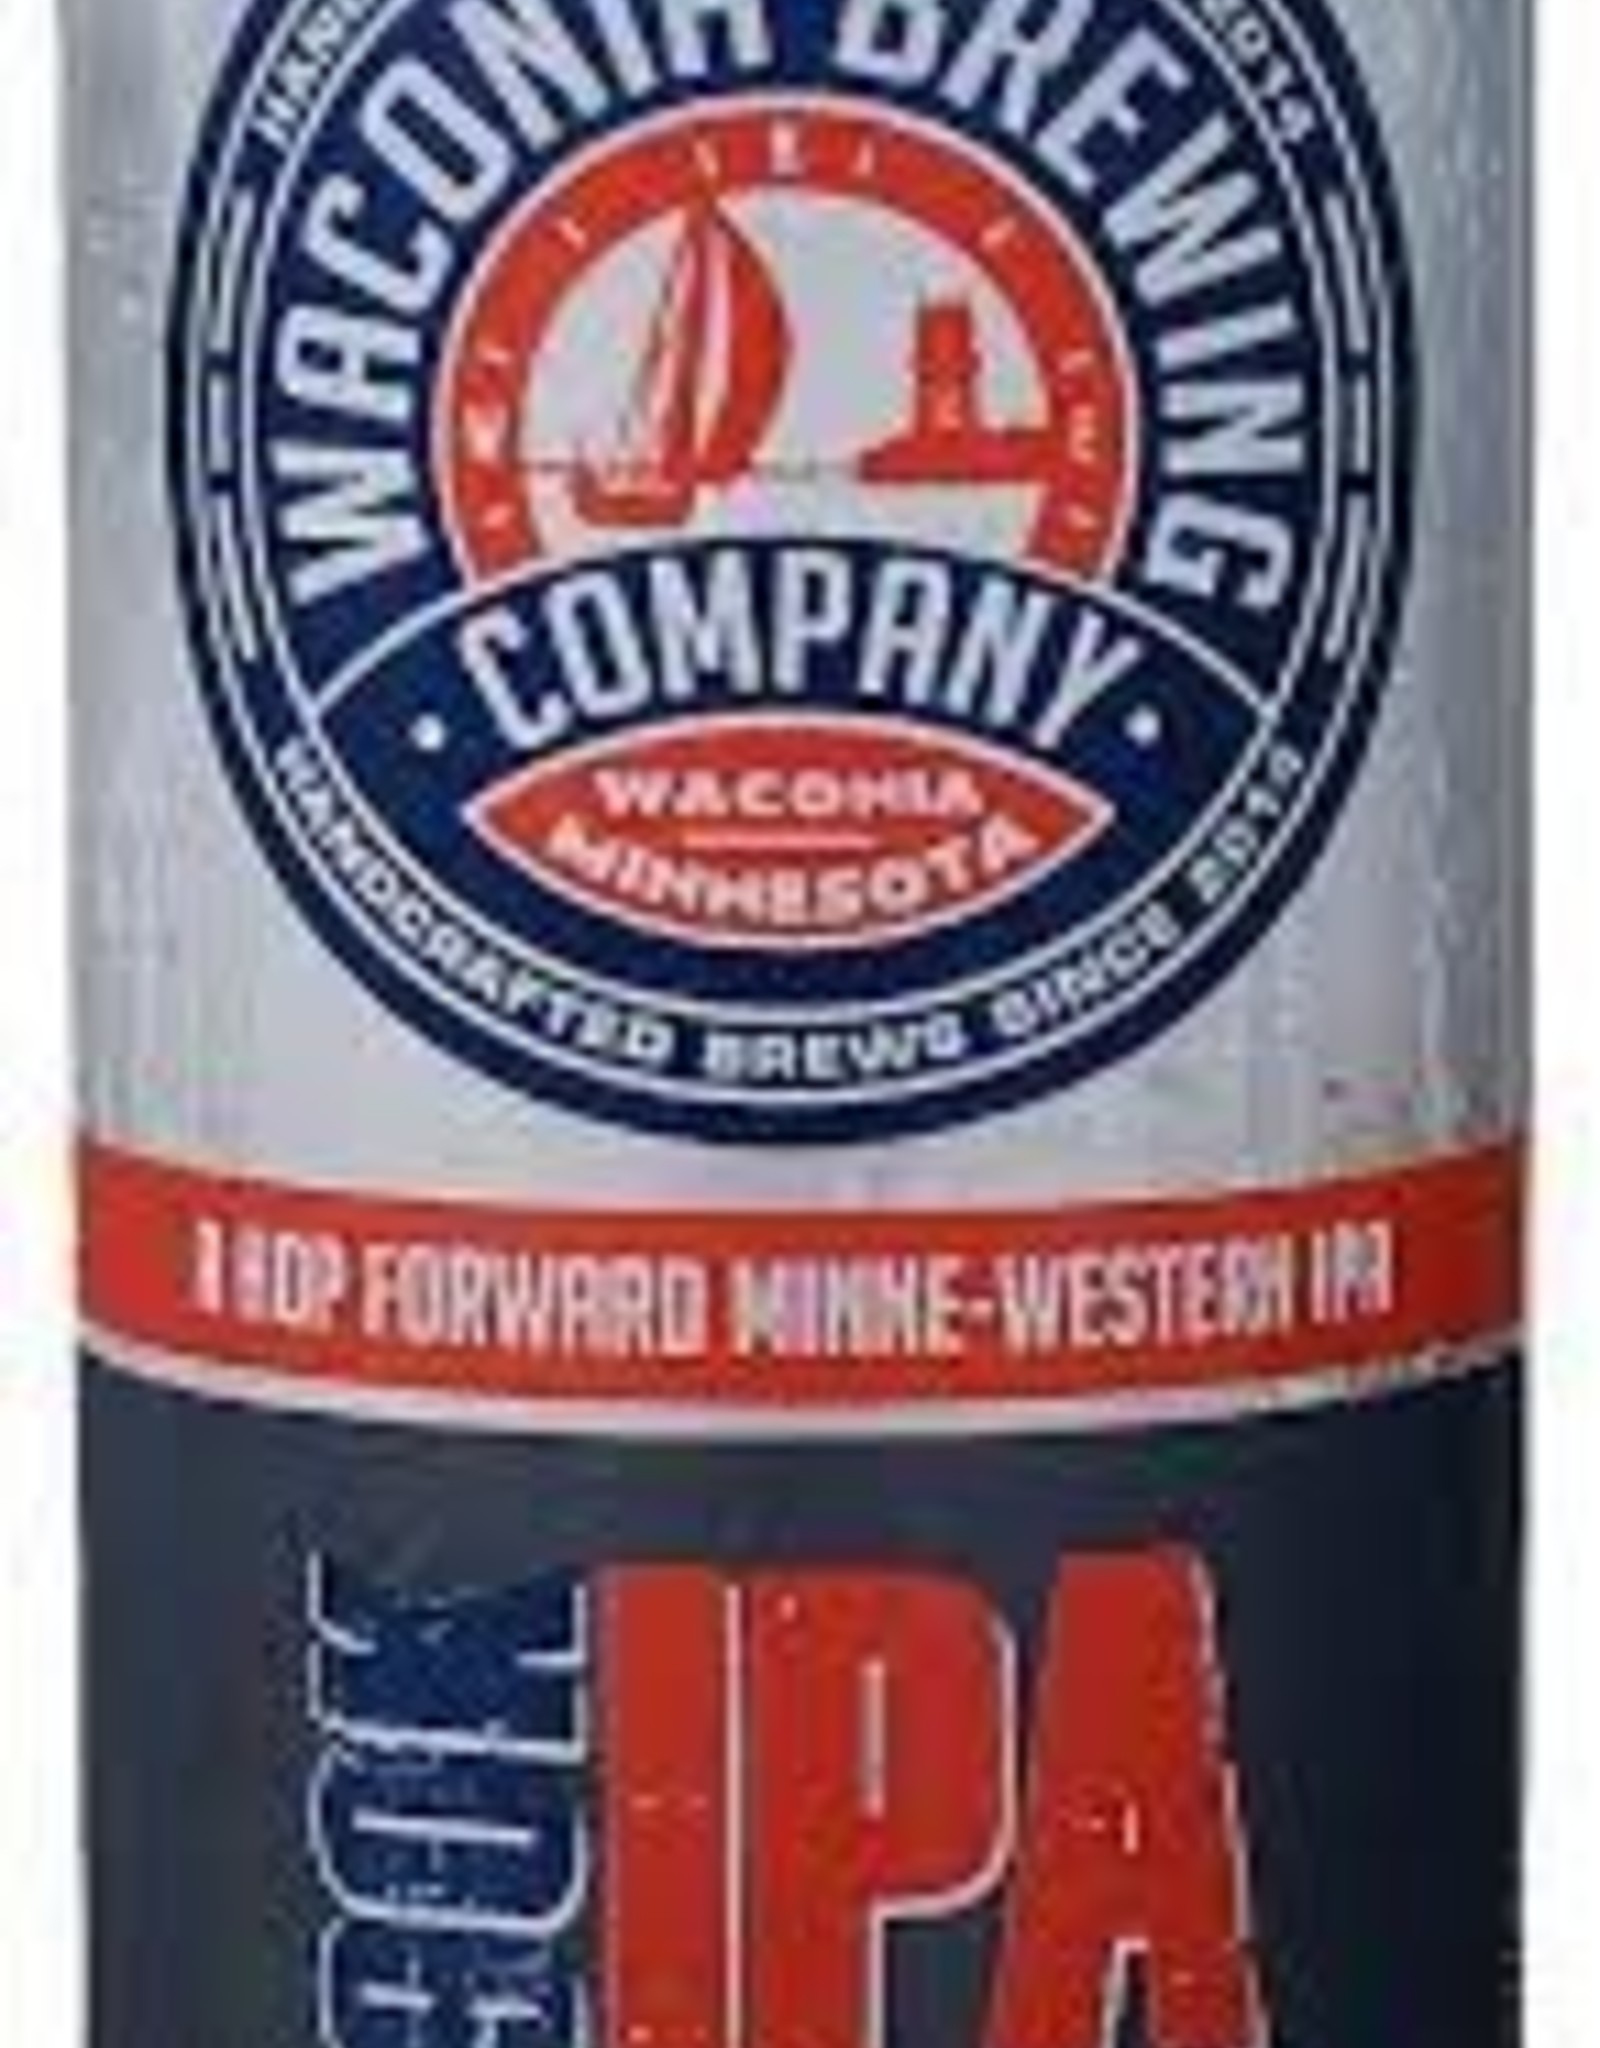 Waconia 90K IPA 4x16 oz cans